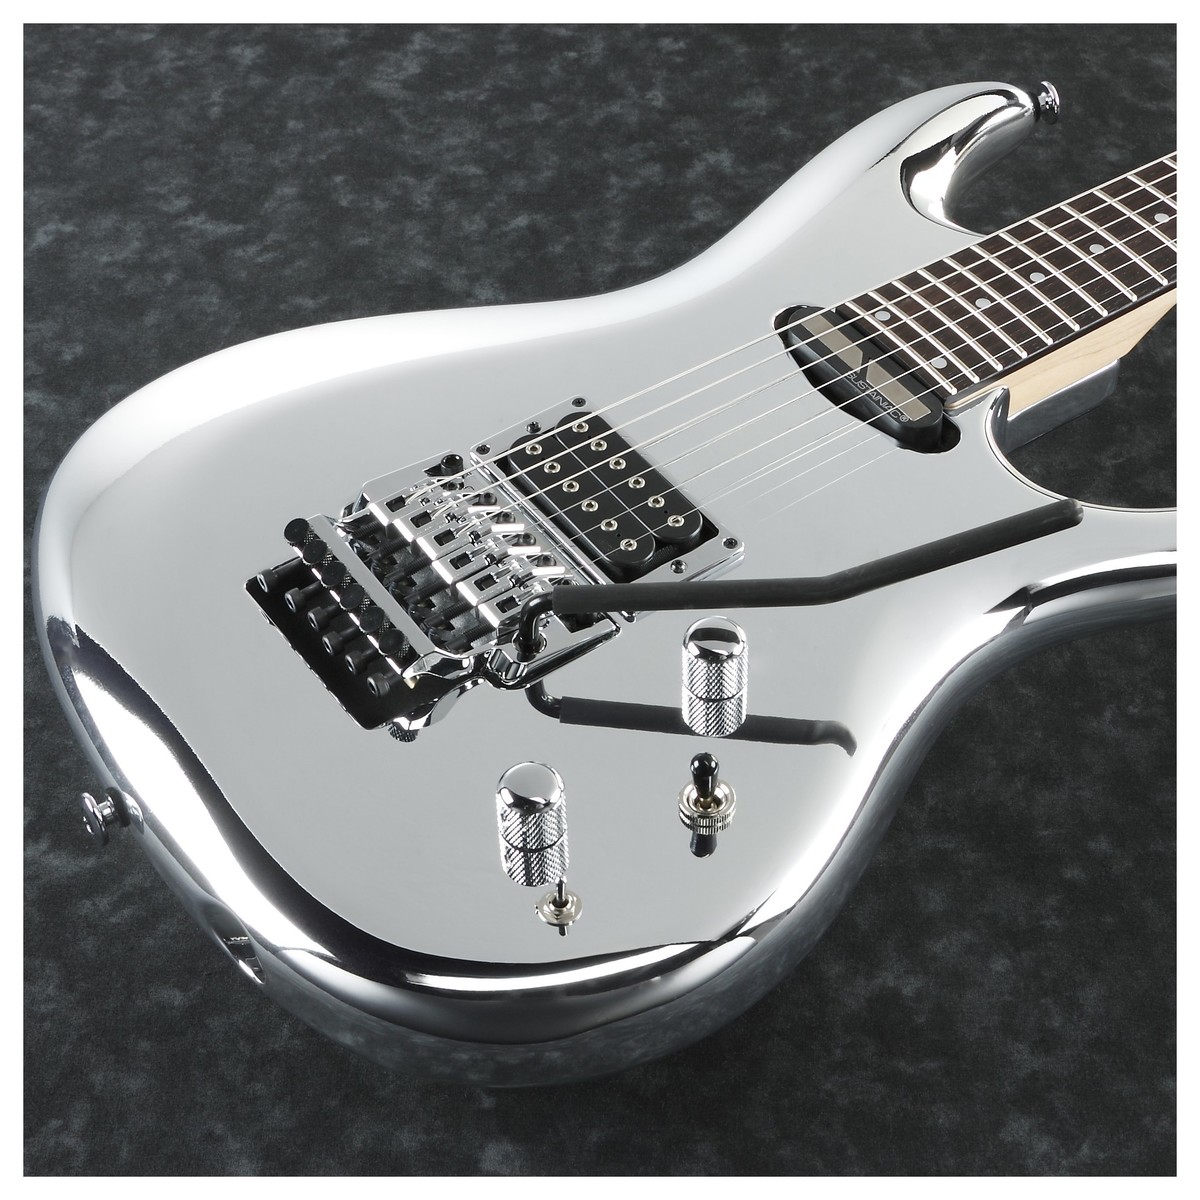 Ibanez Joe Satriani Js1cr Signature Japon H Sustainiac Fr Rw - Chrome Boy - Guitarra eléctrica de doble corte - Variation 1